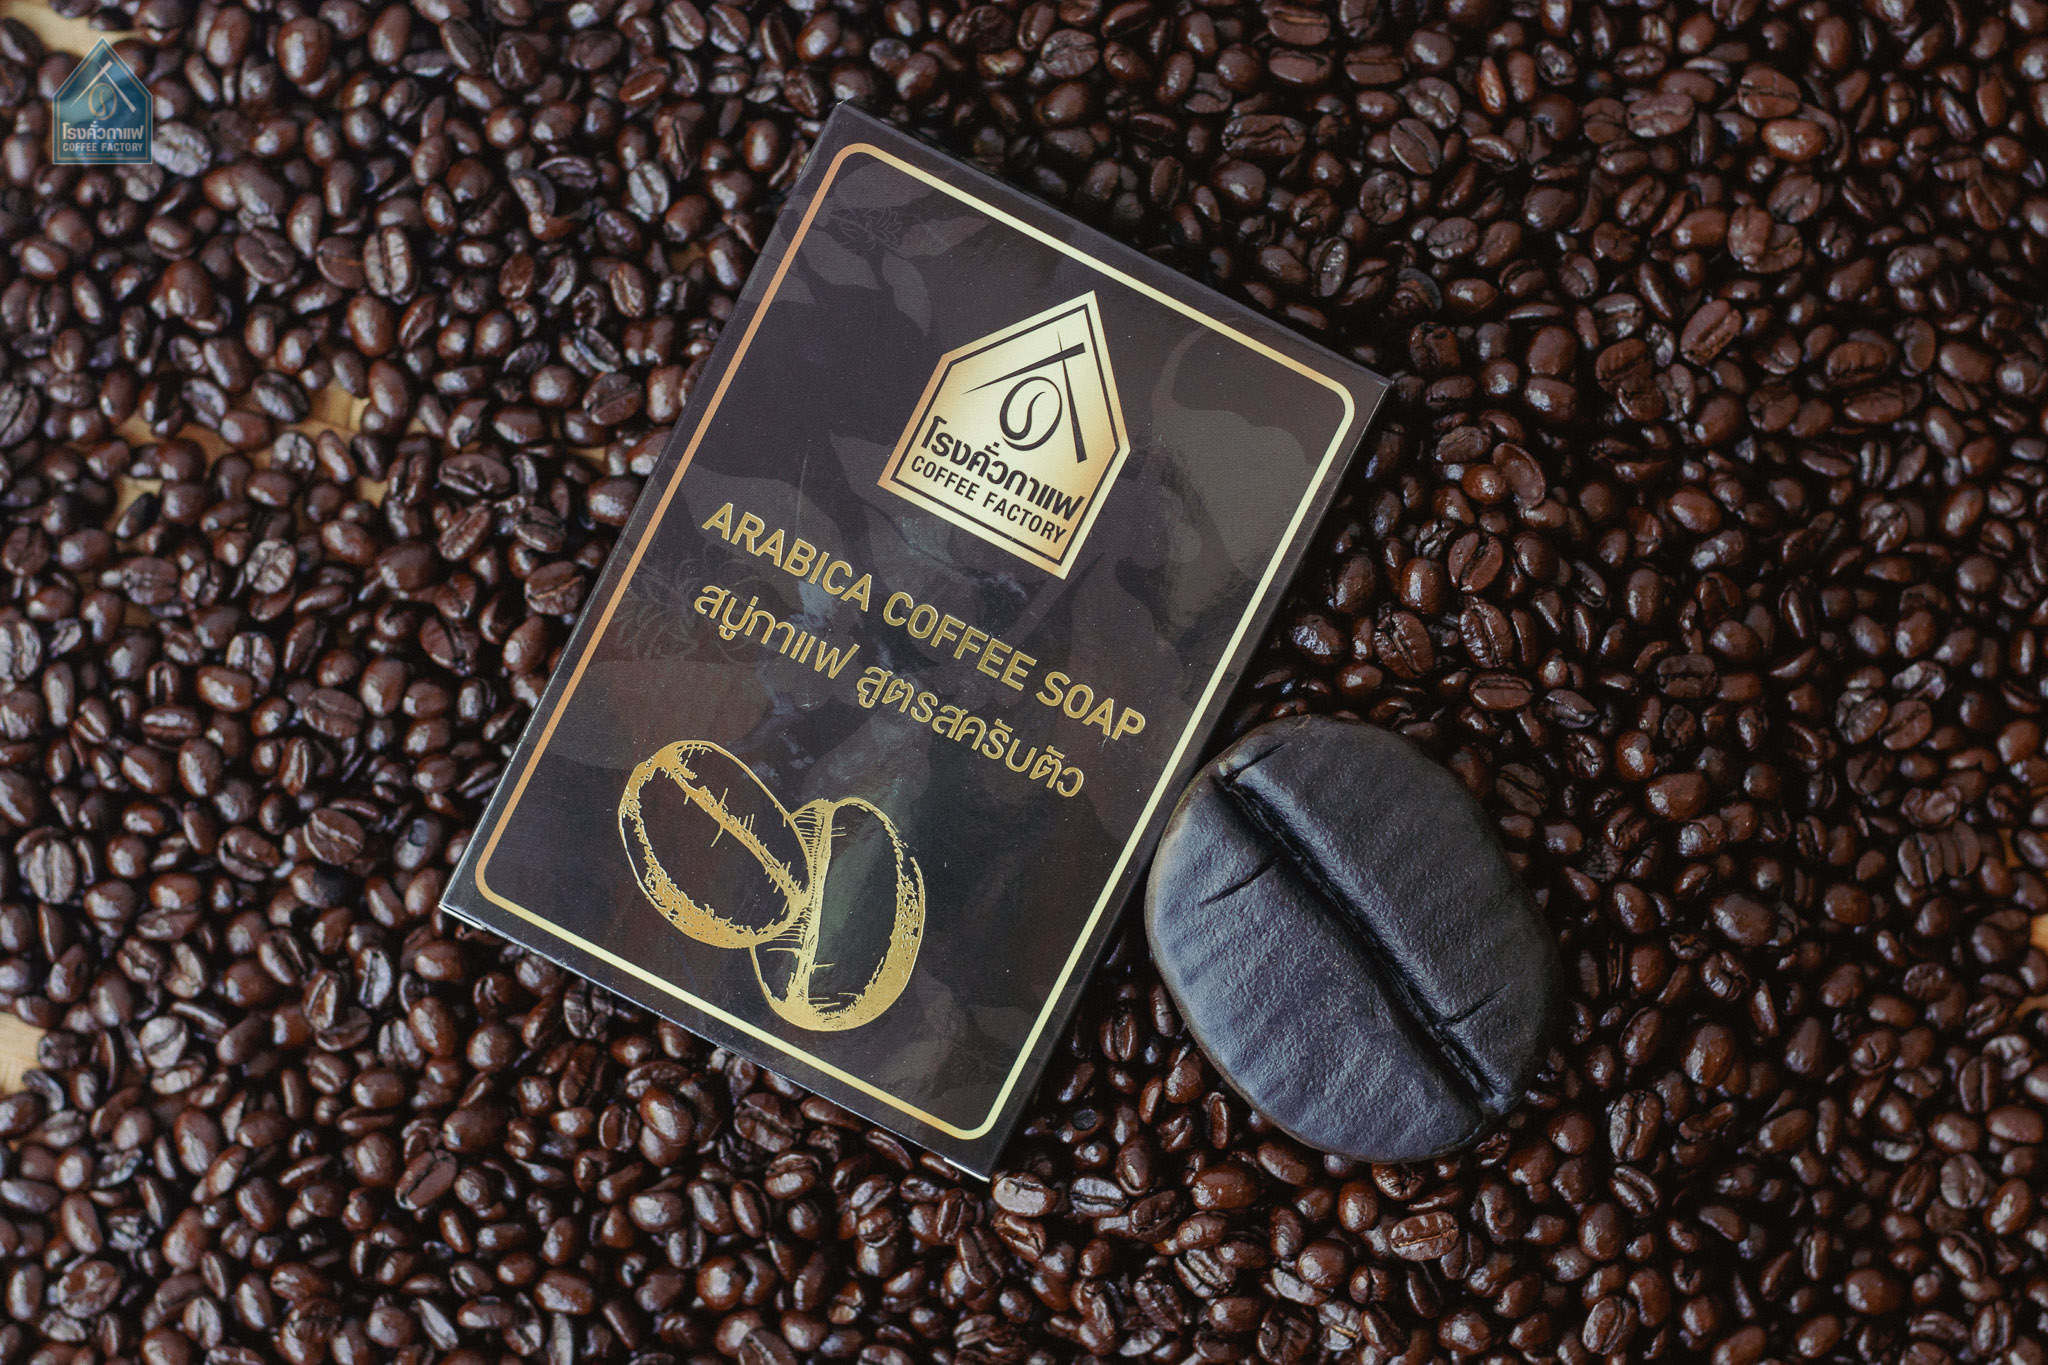 COFFEE FACTORY Arabica Scrub Coffee Soap 100G. สบู่กาแฟสครับตัว